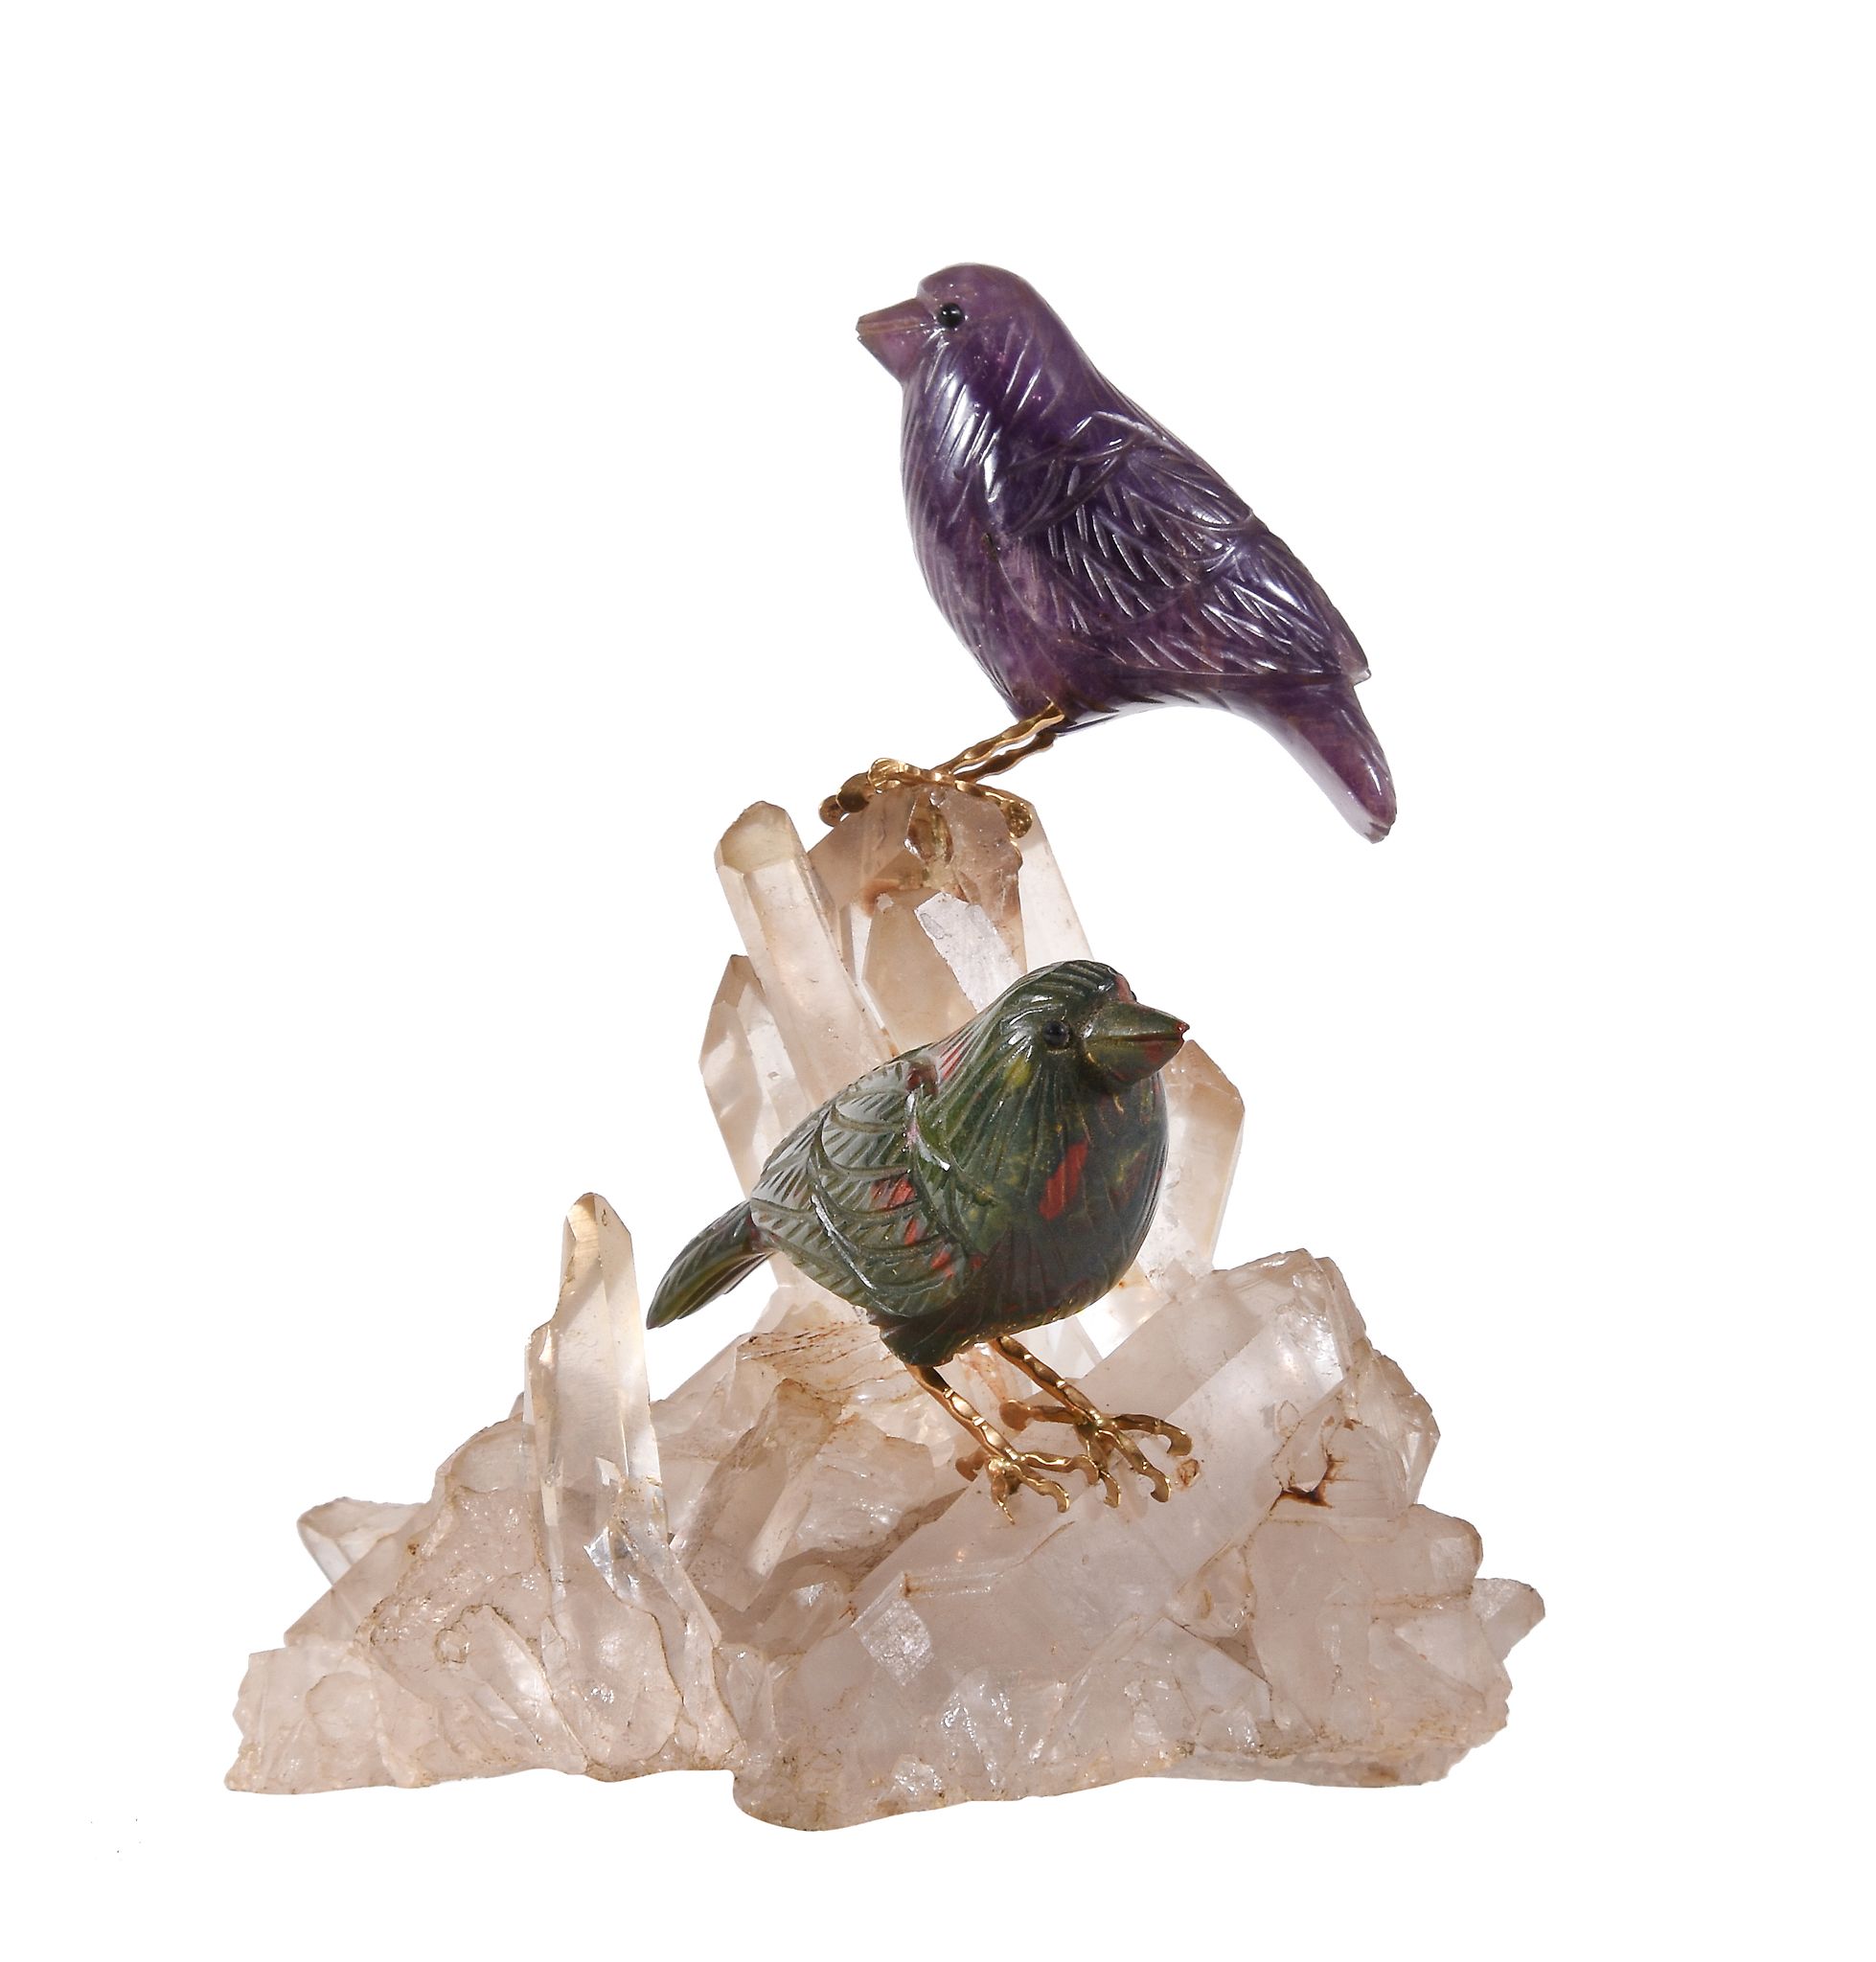 A rock crystal, amethyst and bloodstone bird ornament, the carved amethyst and bloodstone birds